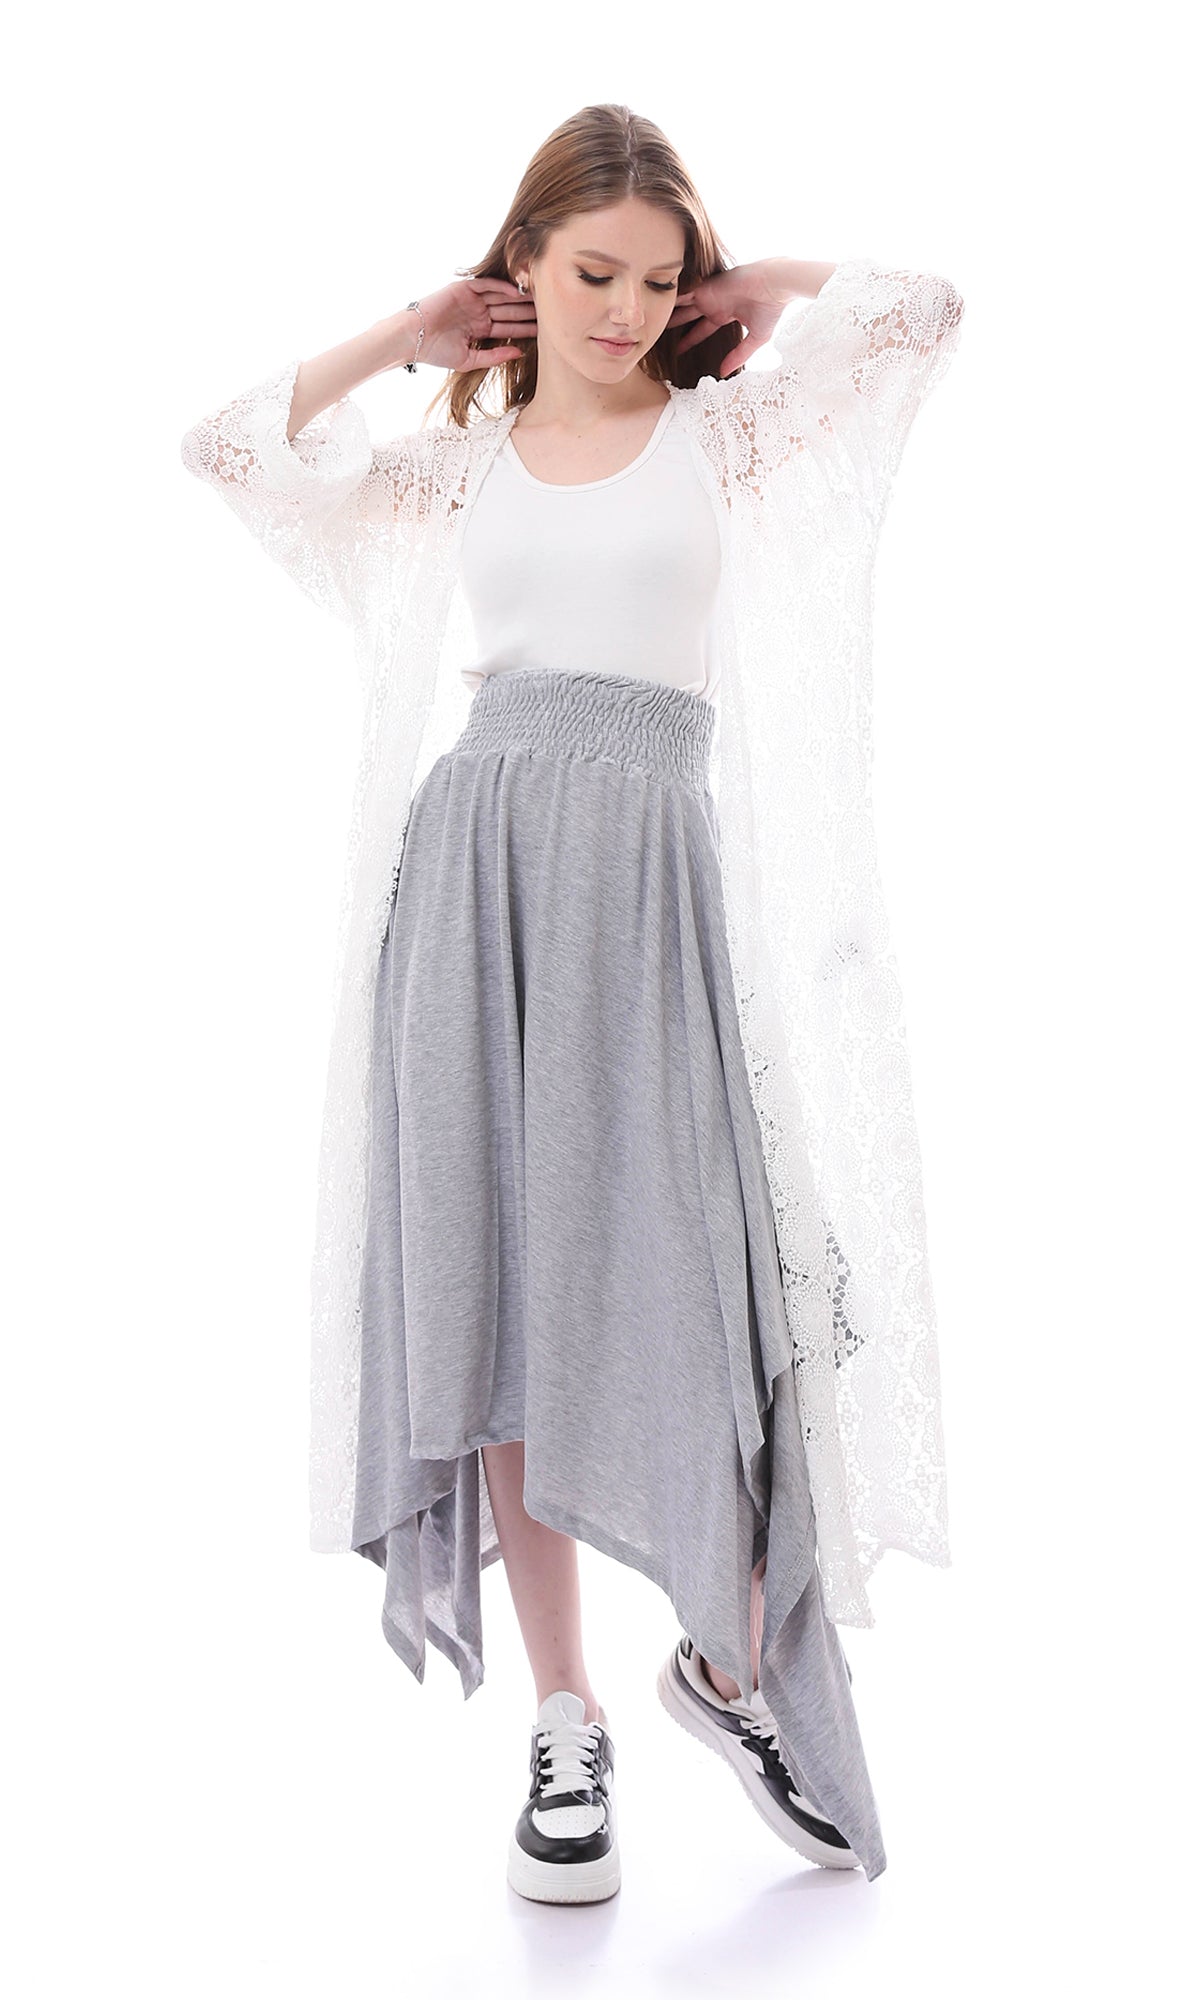 O167087 Casual Heather Grey Asymmetrical Skirt With Elastic Waist